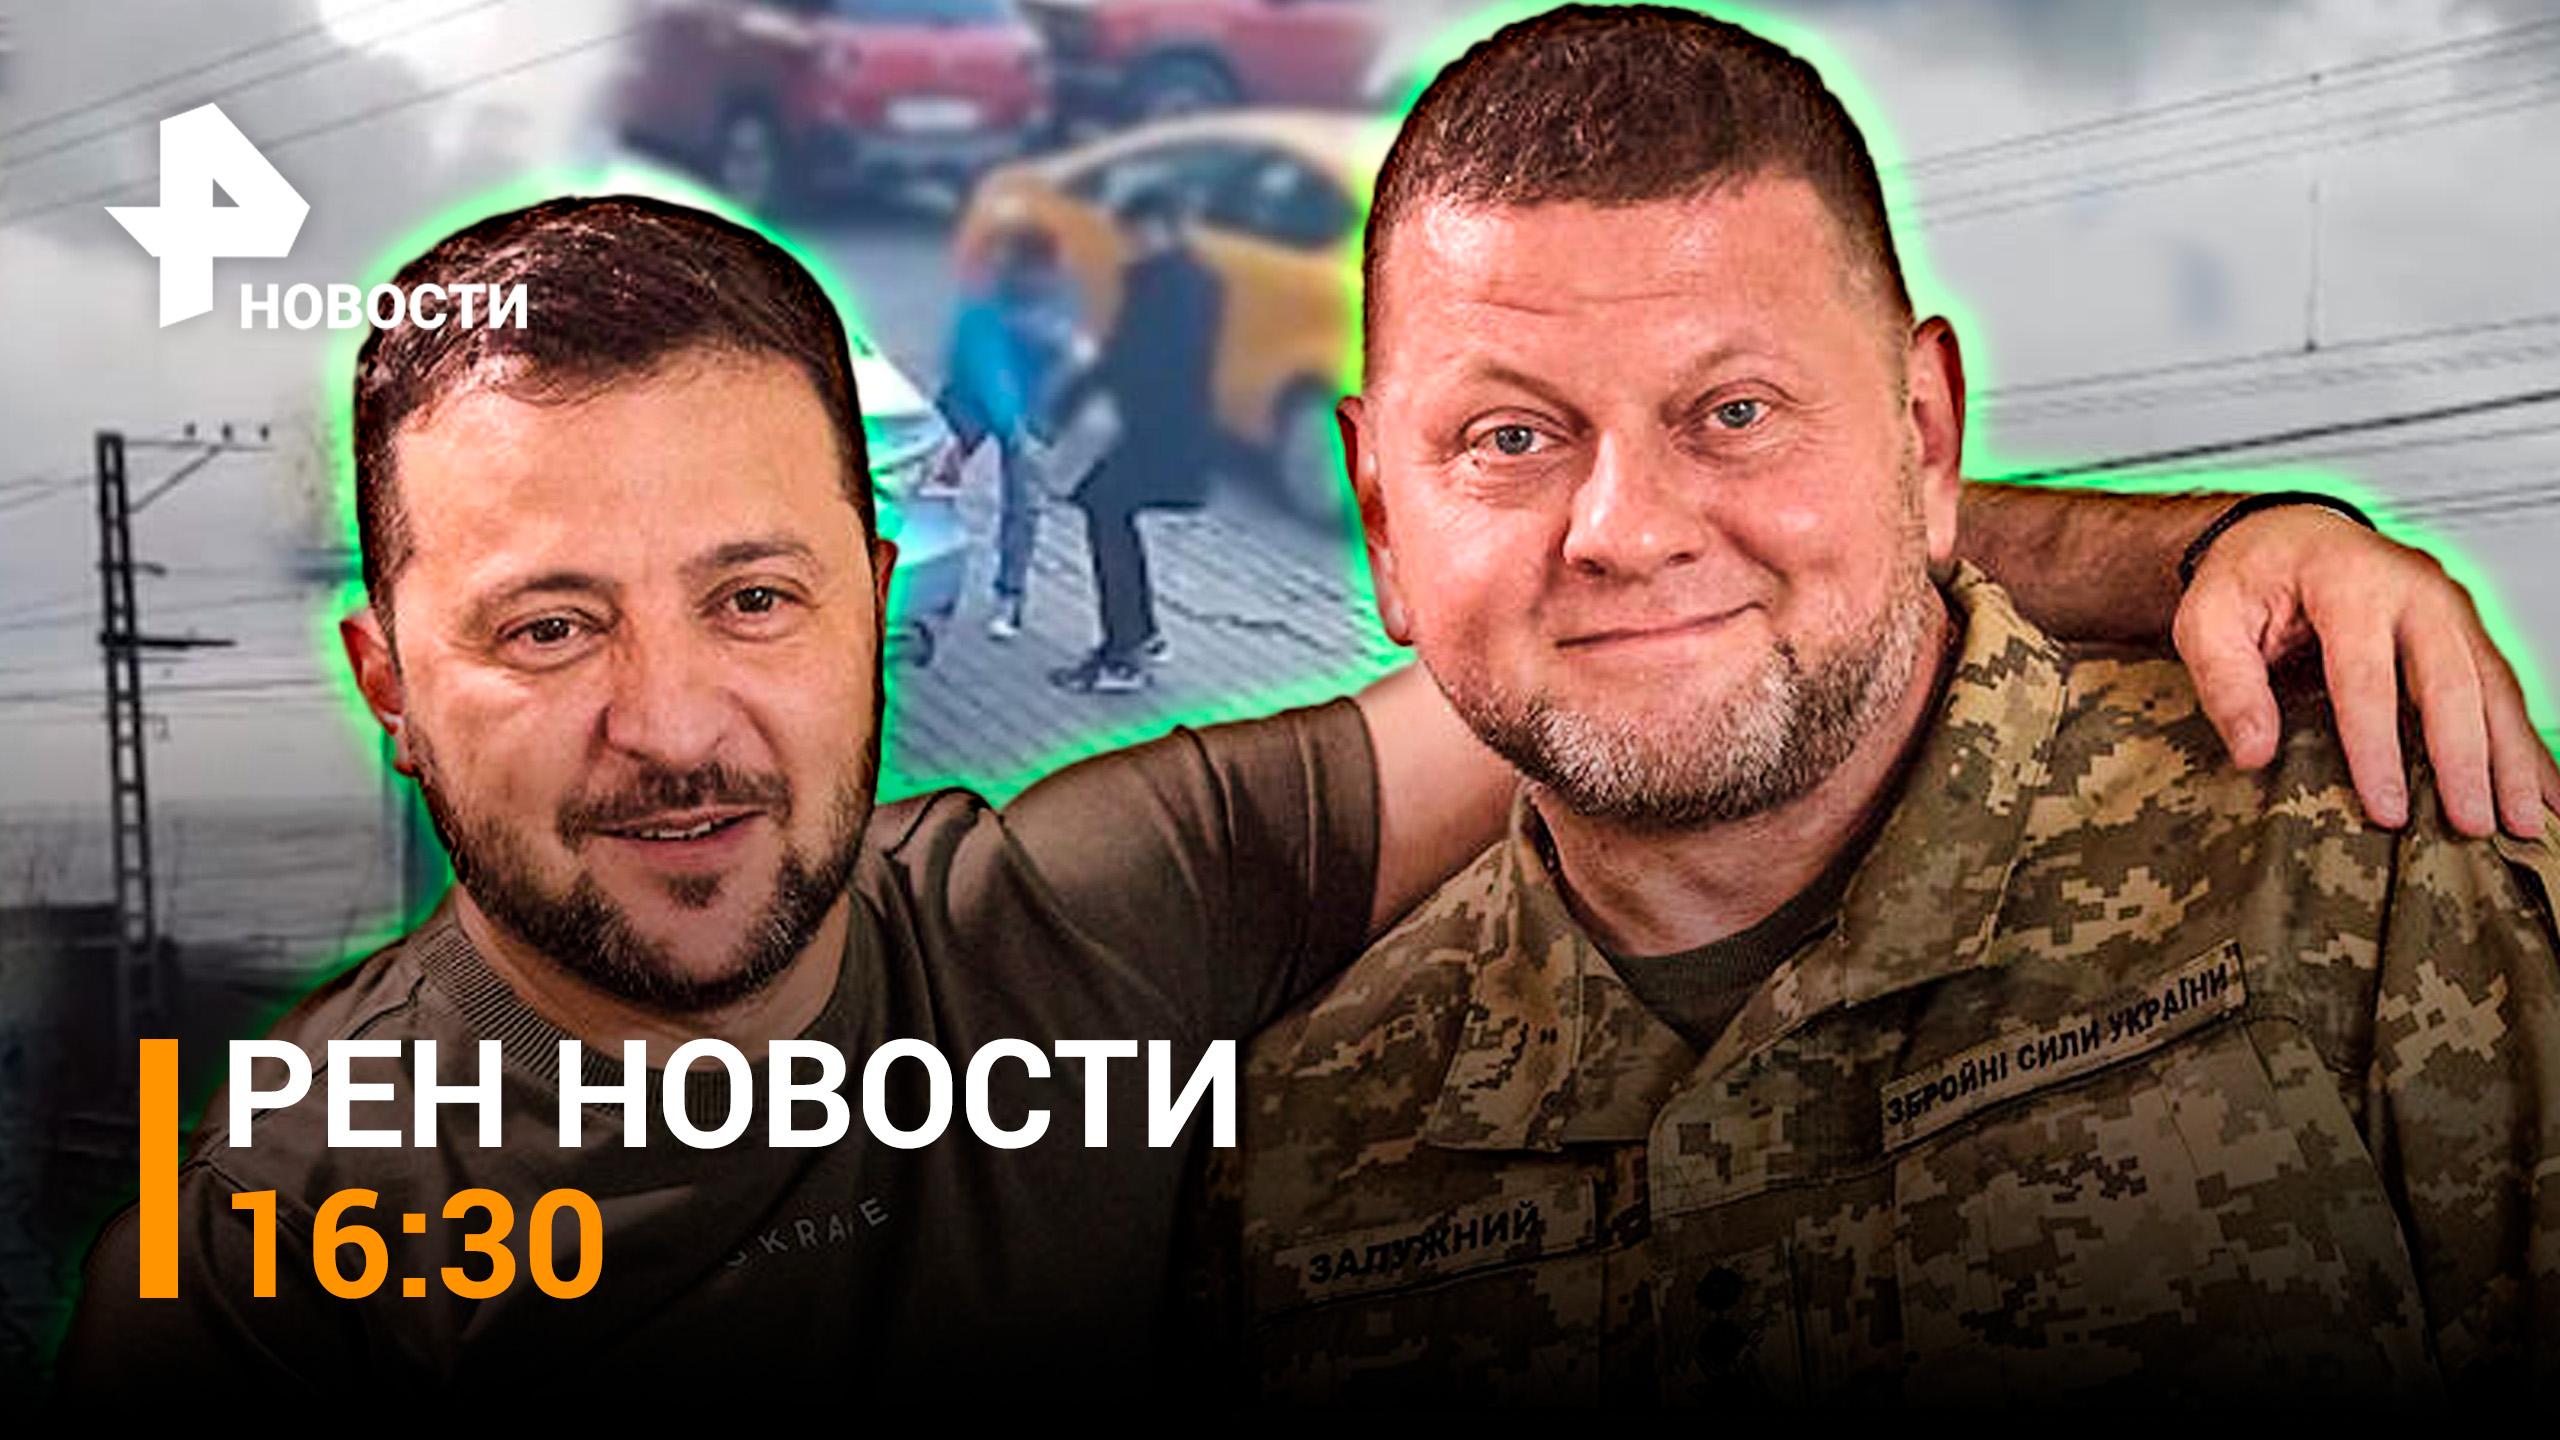 14 килограммов взрывчатки из Одессы. Зеленский подтвердил - хочет уволить Залужного / РЕН НОВОСТИ 16